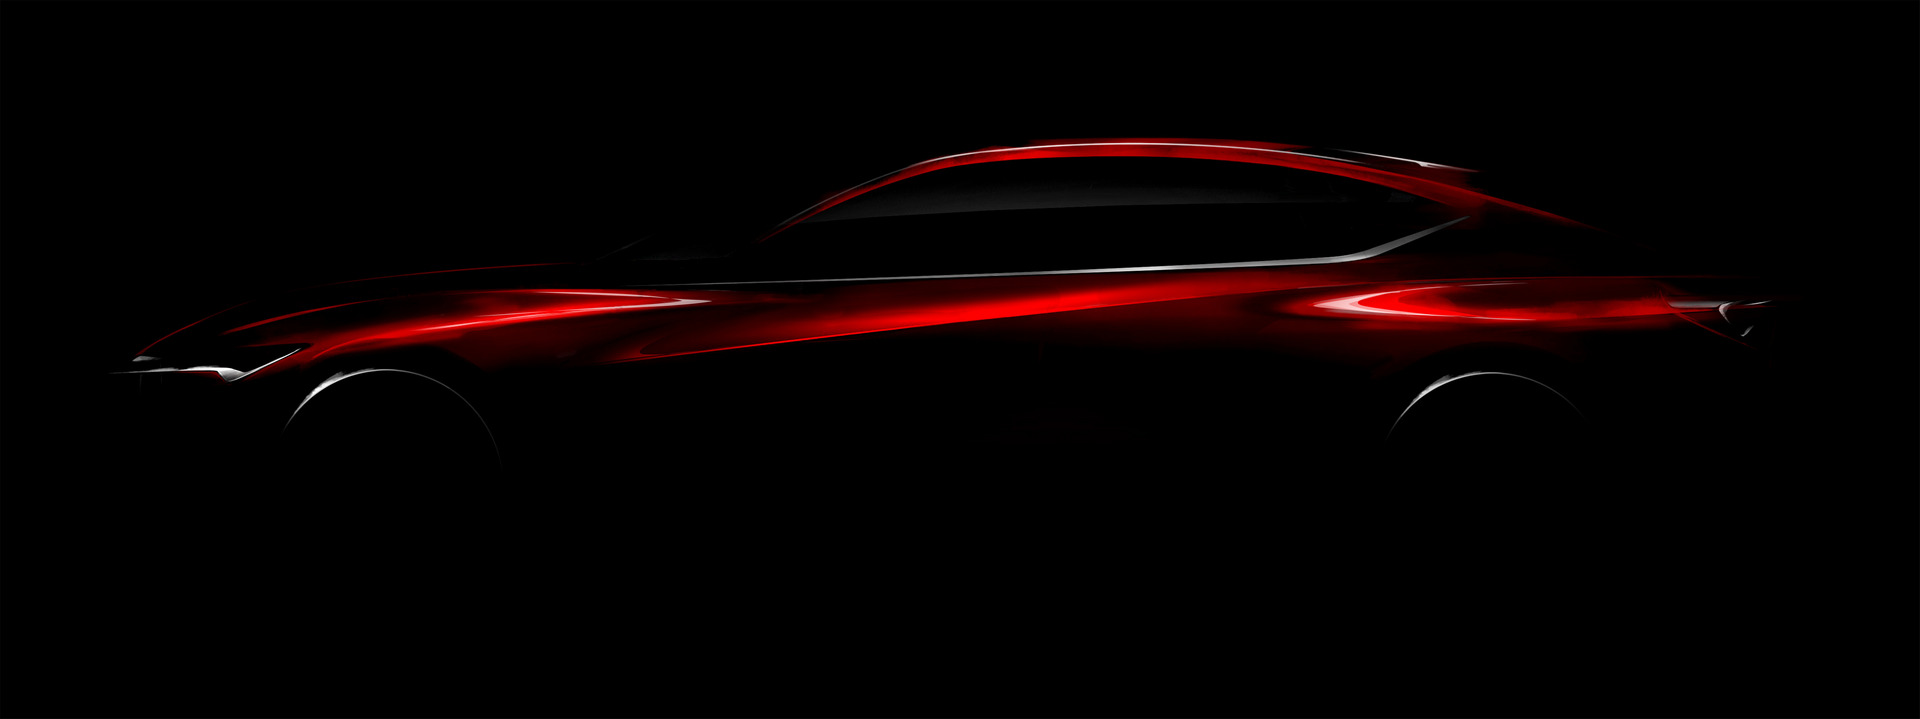 Acura Precision Concept © Honda Motor Co., Ltd.